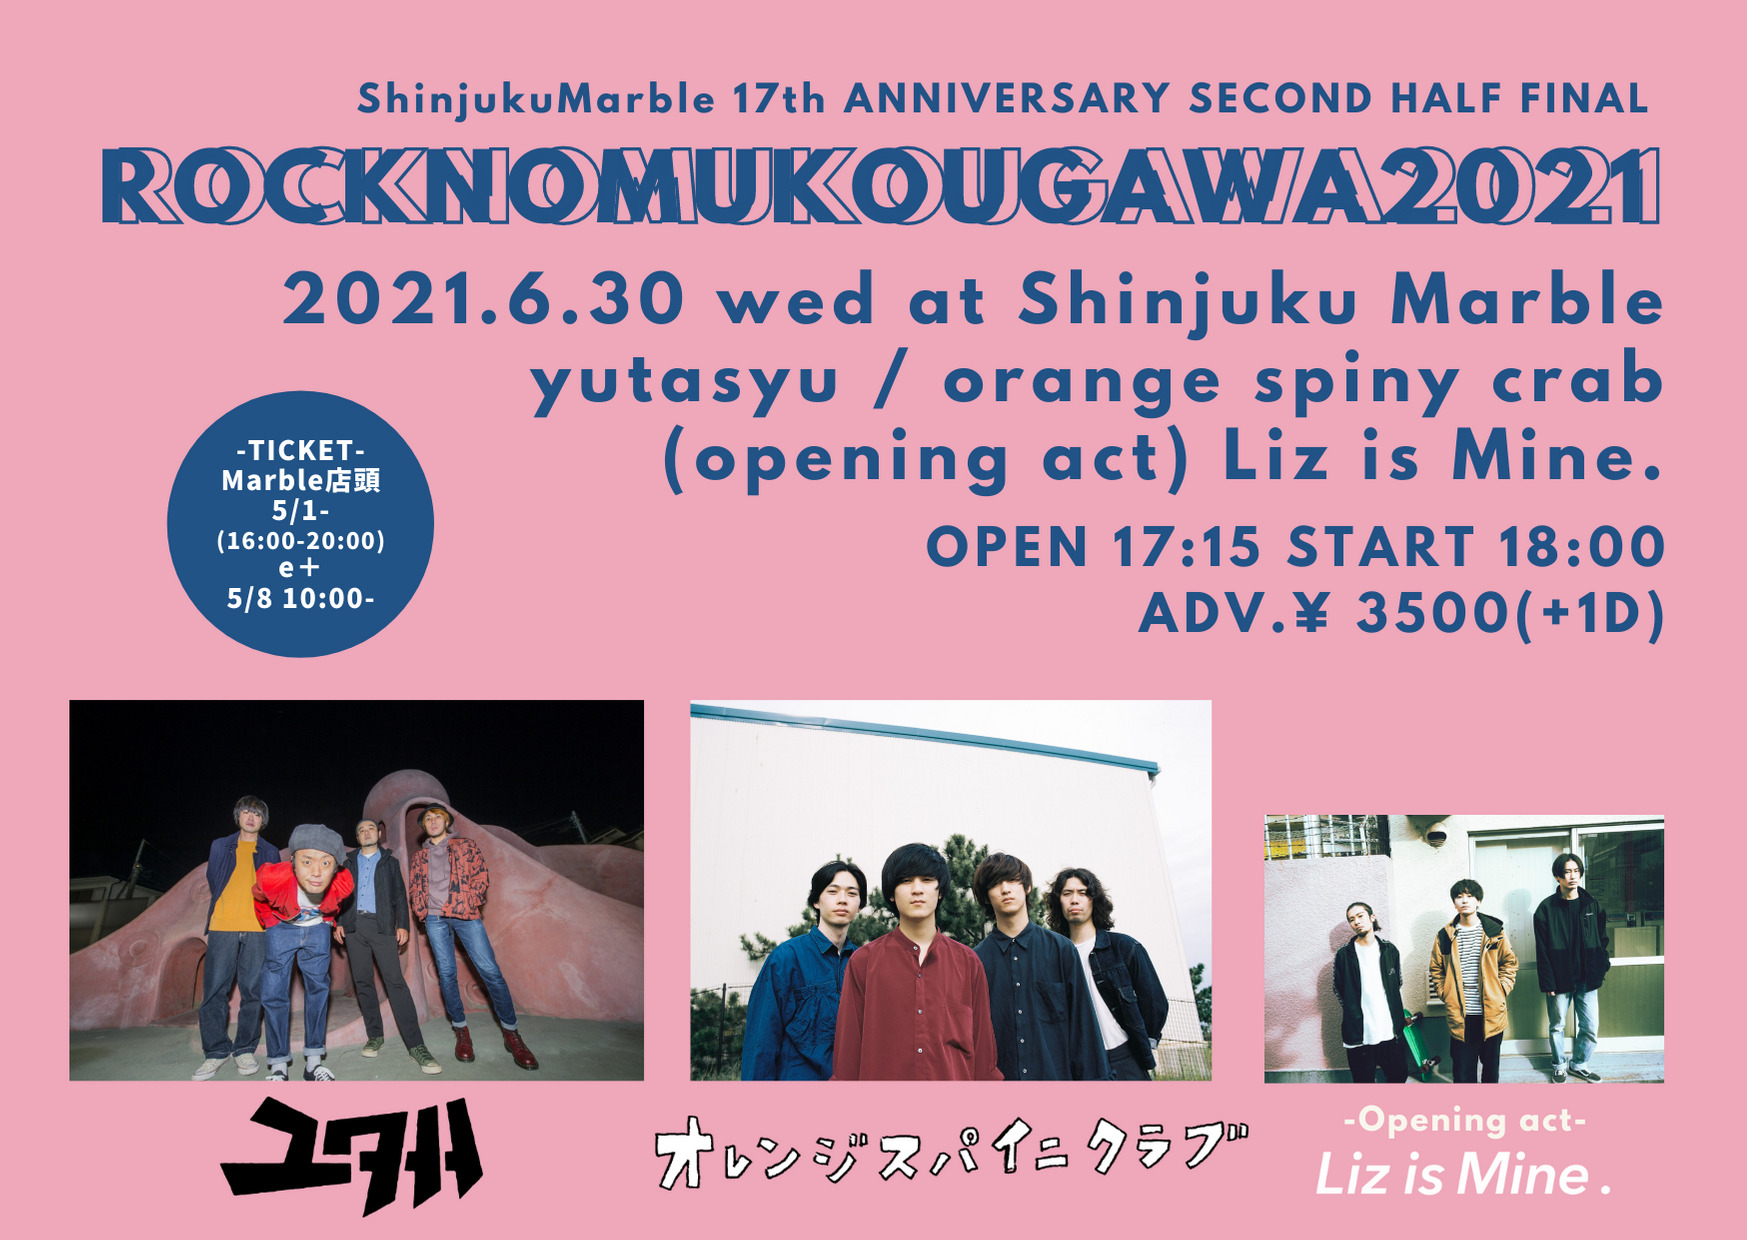 新宿Marble 17th ANNIVERSARY SECOND HALF FINAL「ROCKNOMUKOUGAWA2021」-ユタ州×オレンジスパイニクラブ-